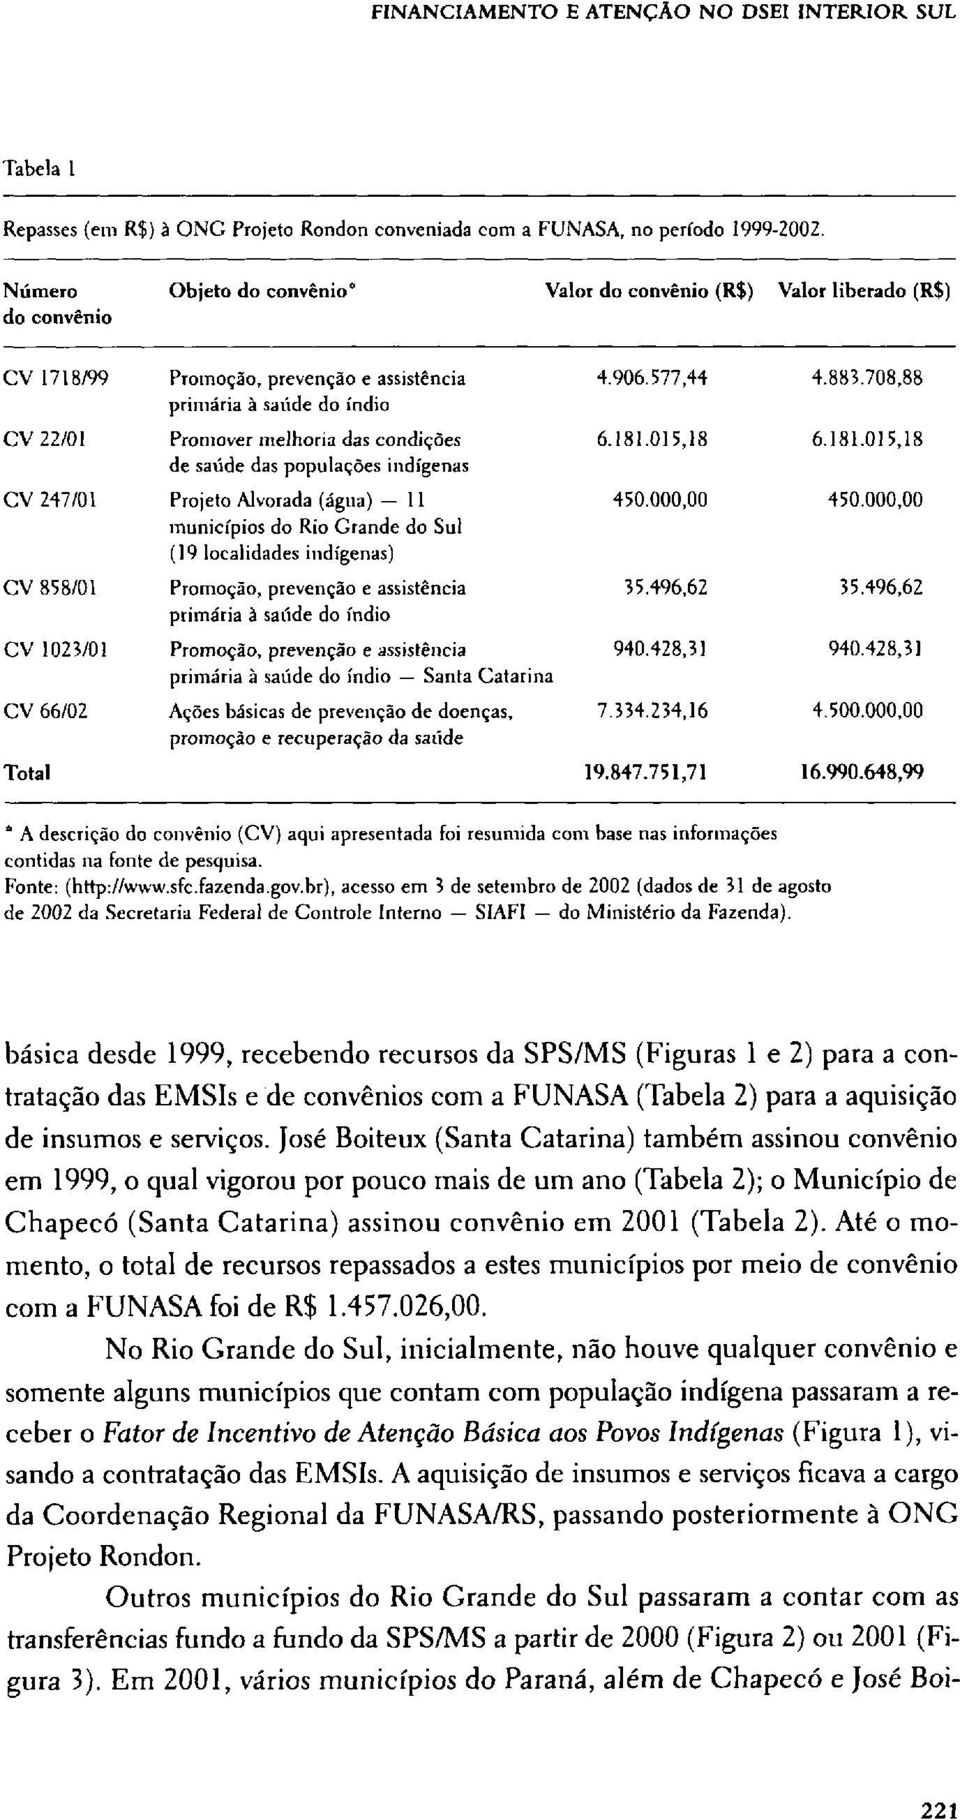 br), acesso em 3 de setembro de 2002 (dados de 31 de agosto de 2002 da Secretaria Federal de Controle Interno SIAFI do Ministério da Fazenda).